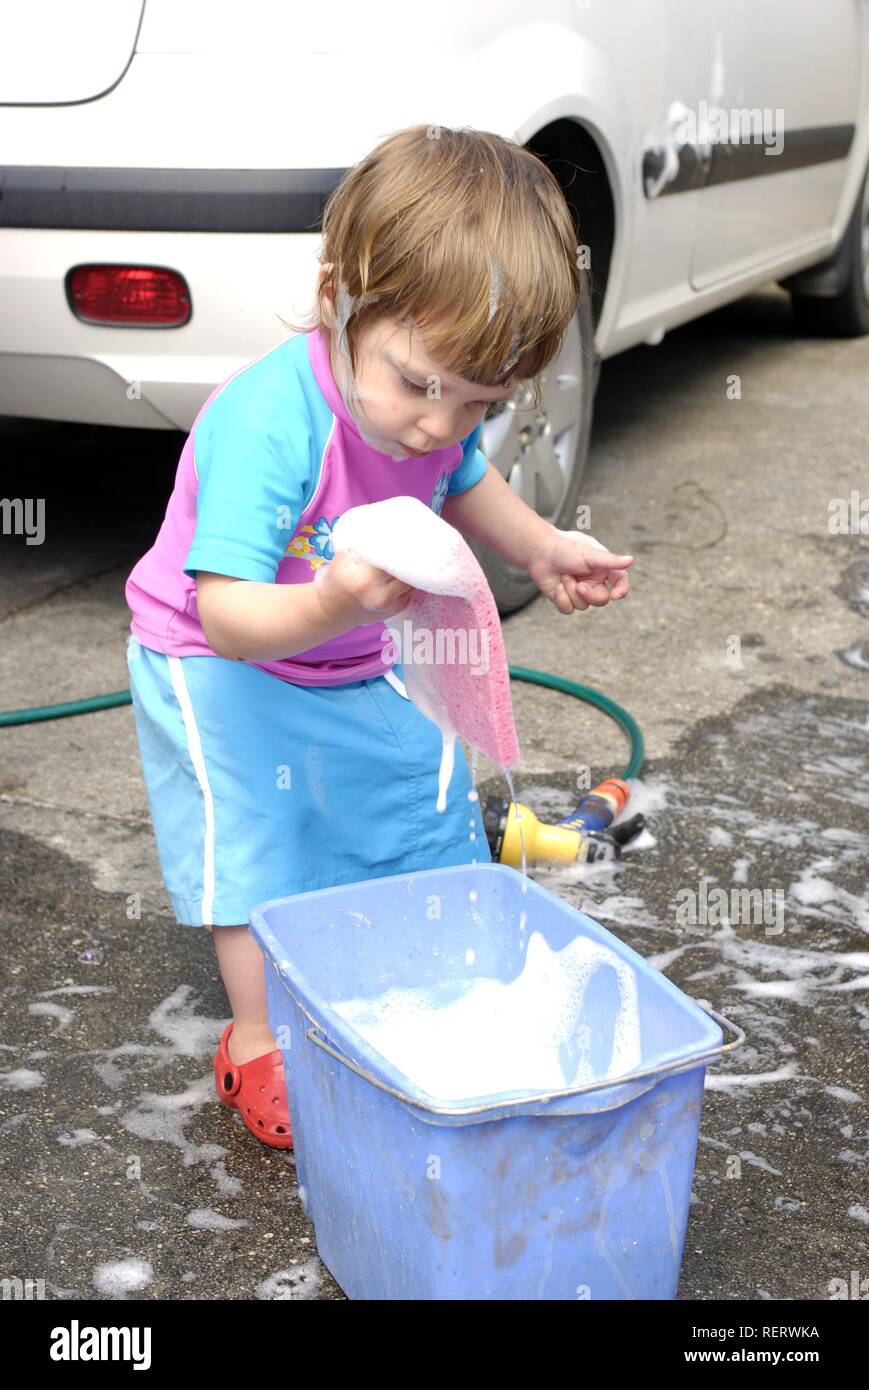 Due anno vecchia ragazza divertirsi aiutando a lavare la macchina di famiglia Foto Stock